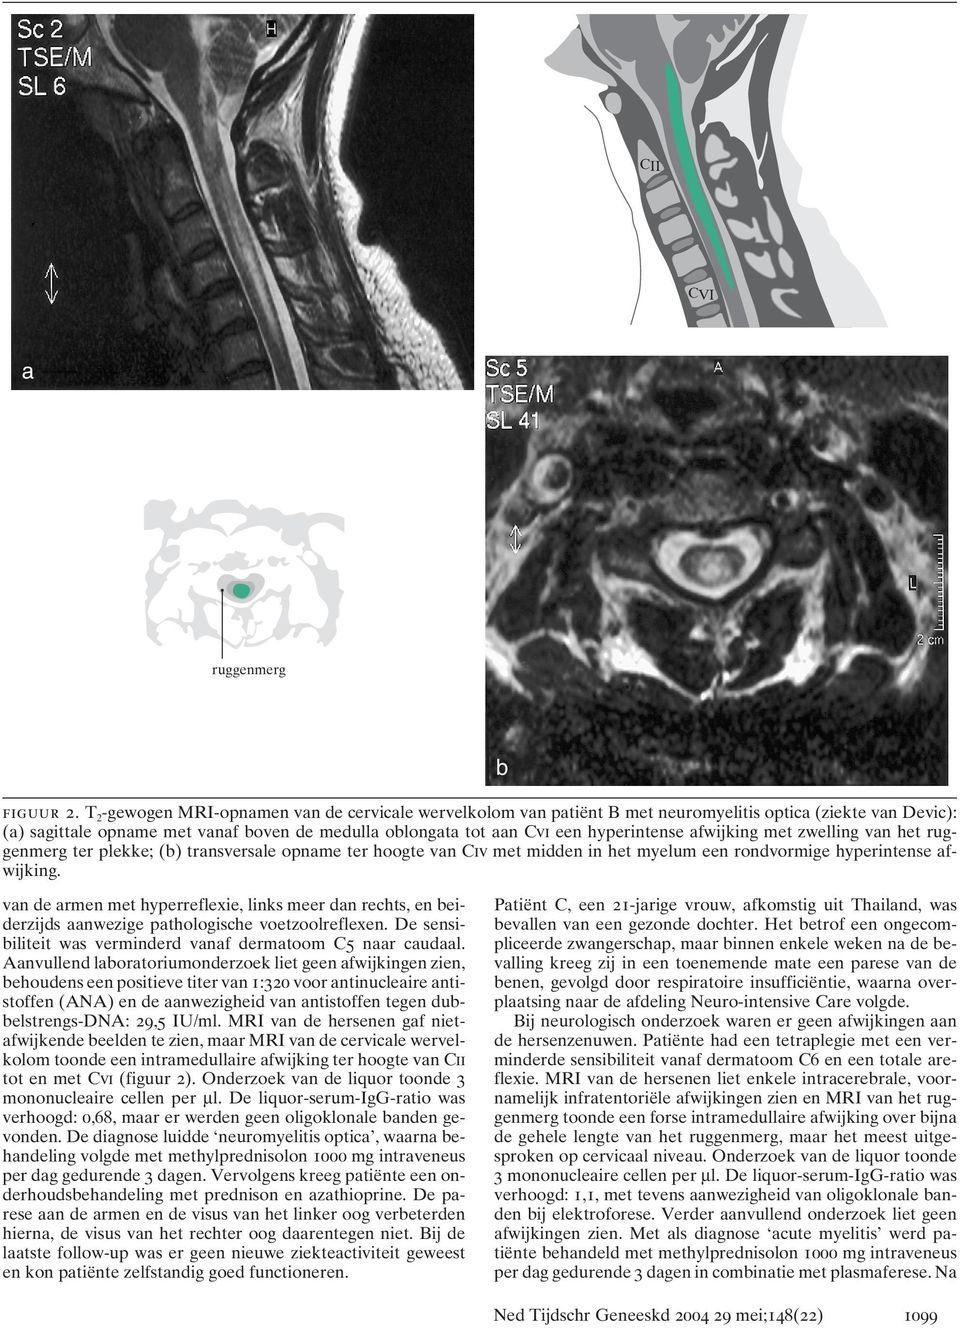 afwijking met zwelling van het ruggenmerg ter plekke; (b) transversale opname ter hoogte van Civ met midden in het myelum een rondvormige hyperintense afwijking.